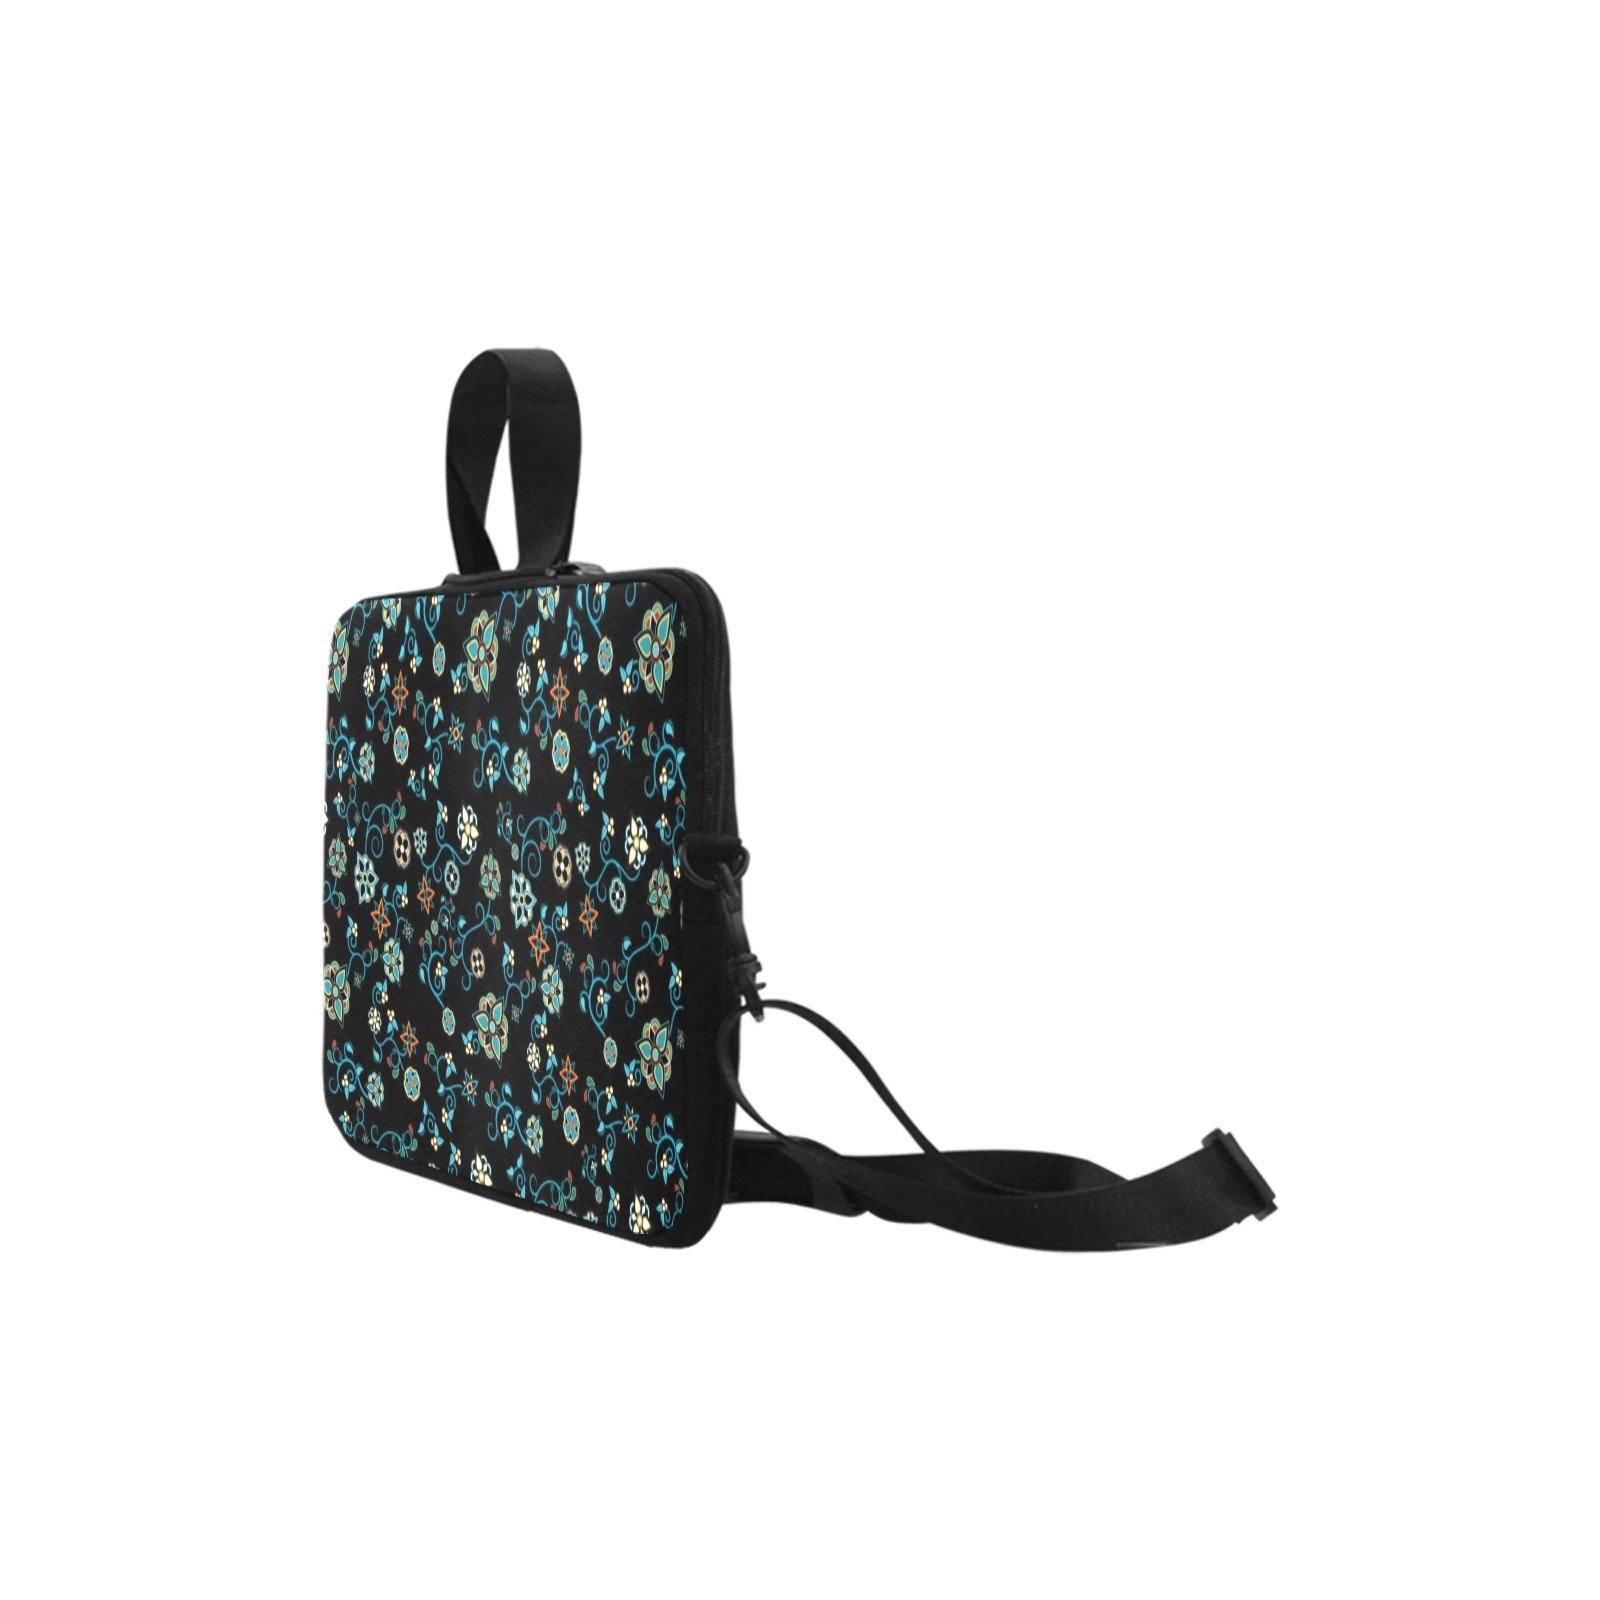 Ocean Bloom Laptop Handbags 14" bag e-joyer 